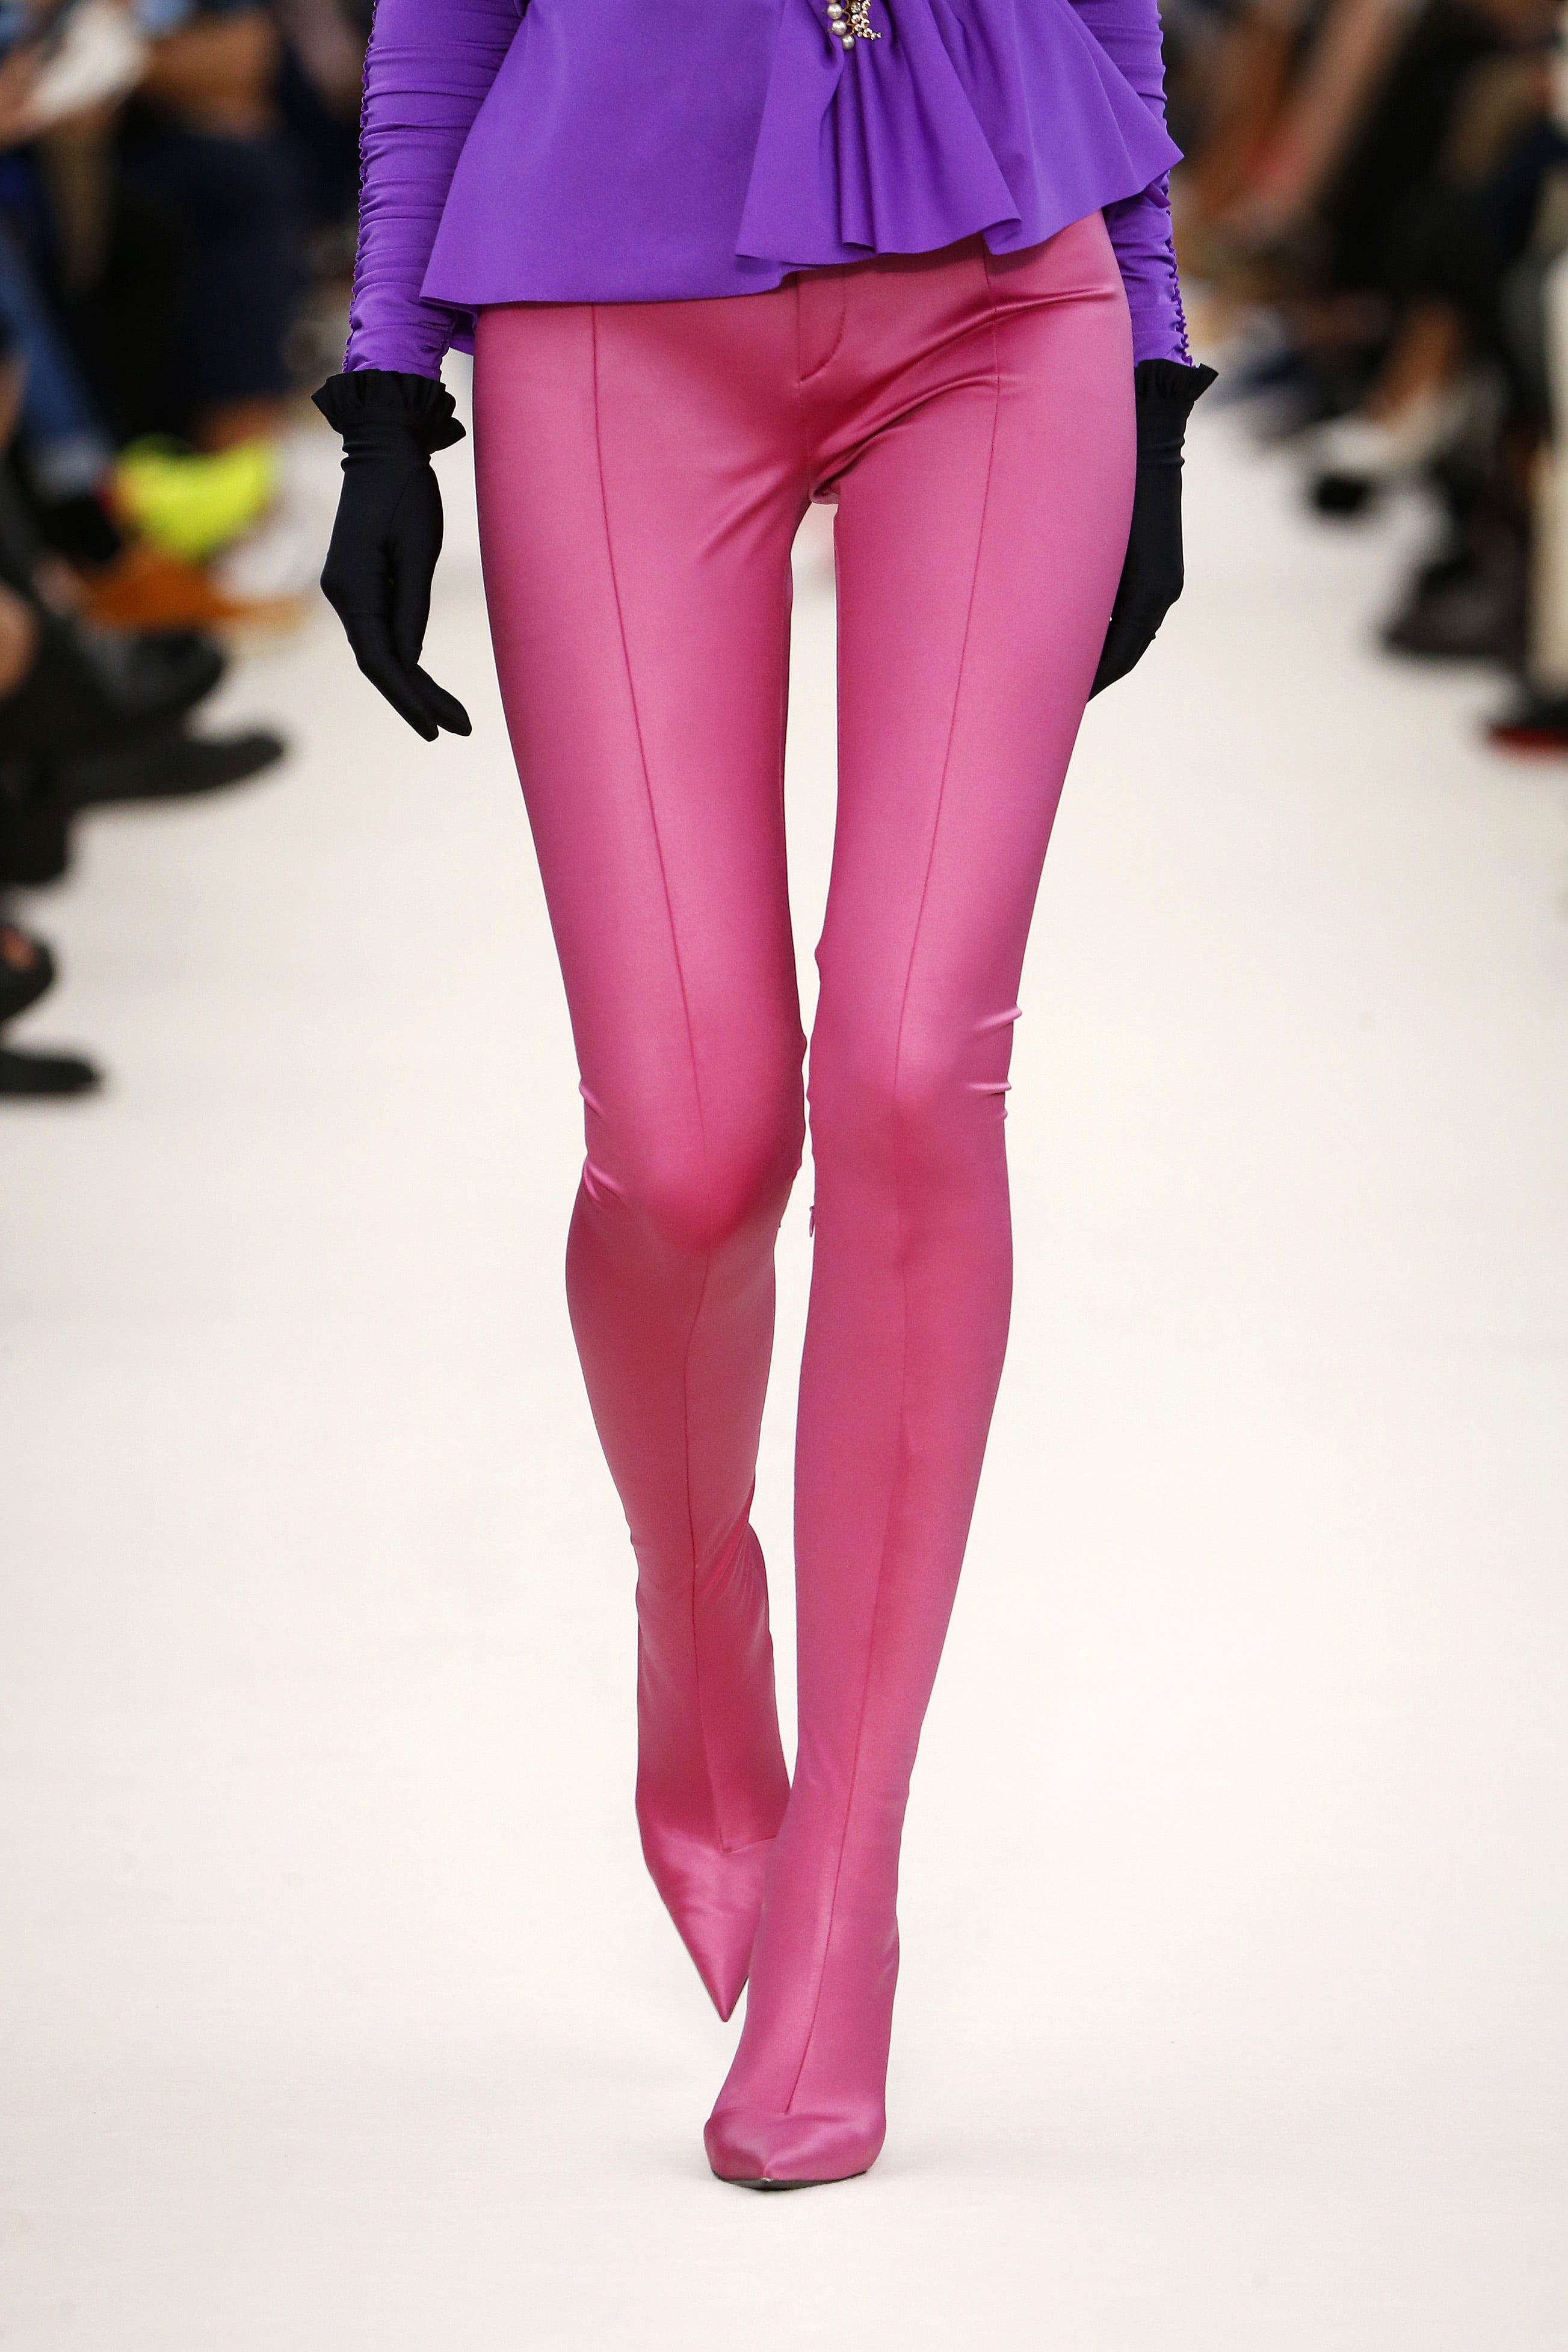 How to DIY $2,800 Balenciaga boot leggings